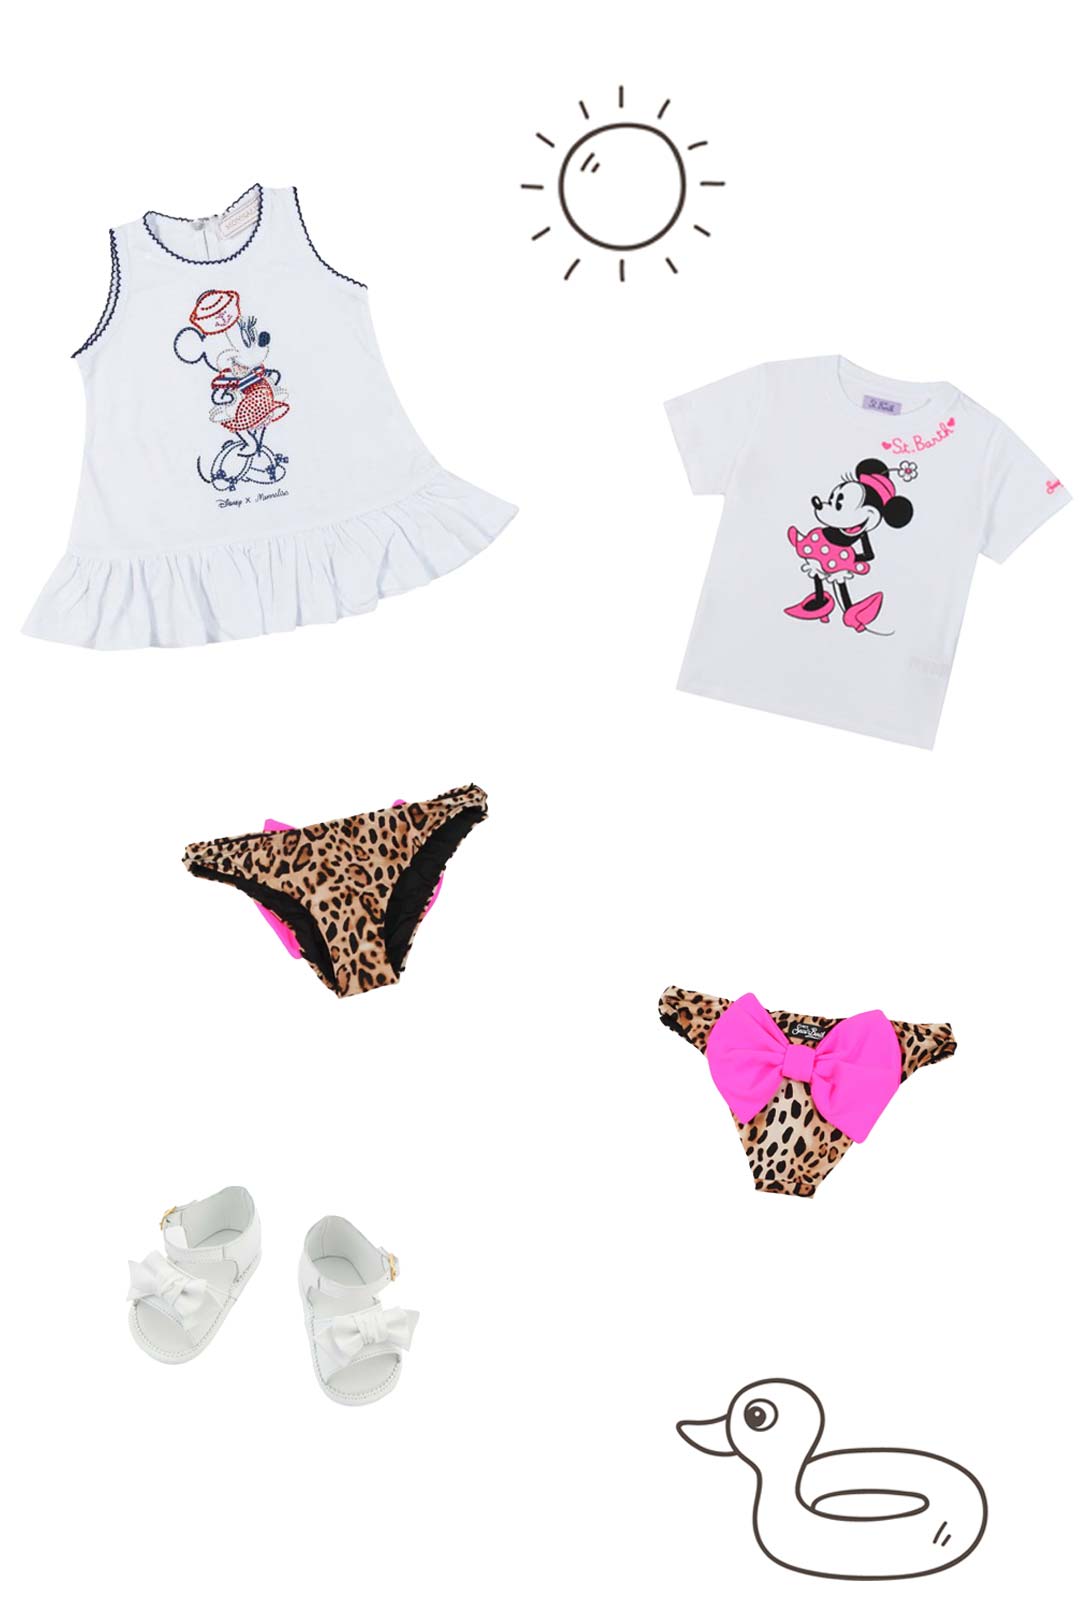 Costumi ed accessori moda per bambine e ragazze nuova collezione SS2023 - annameglio.com shop online